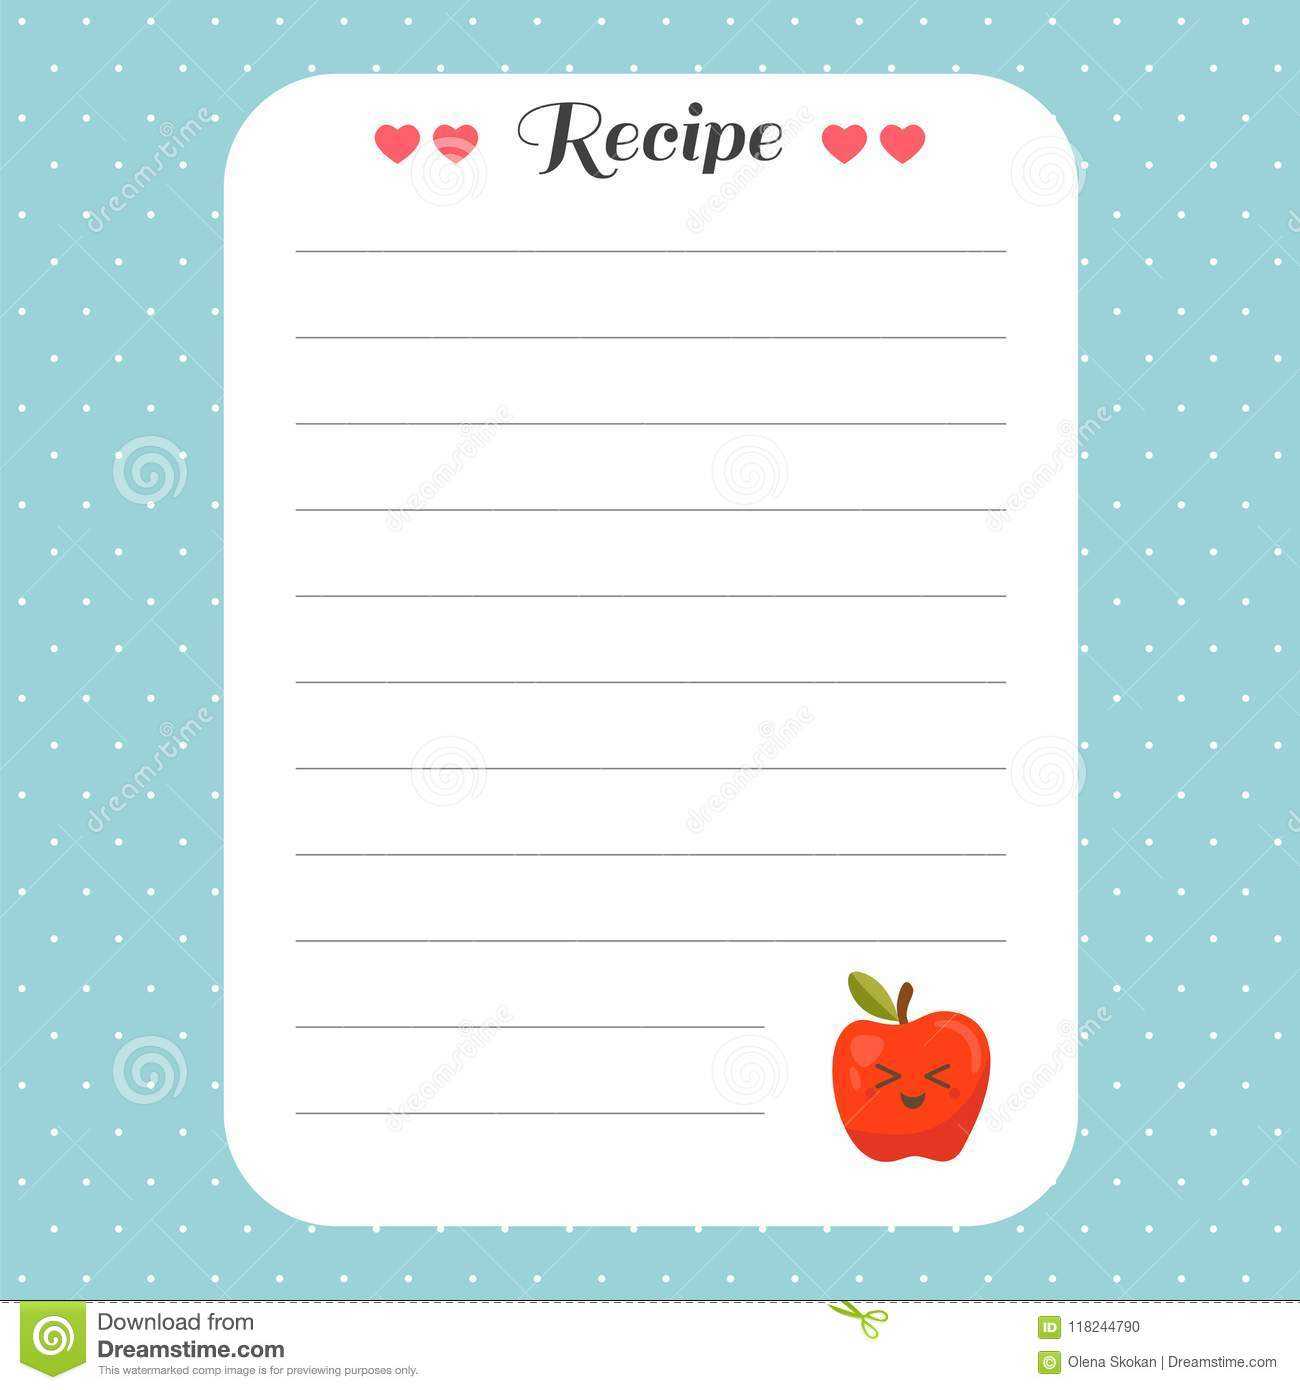 Cookbook Template Page. Recipe Card Template. For Restaurant With Restaurant Recipe Card Template